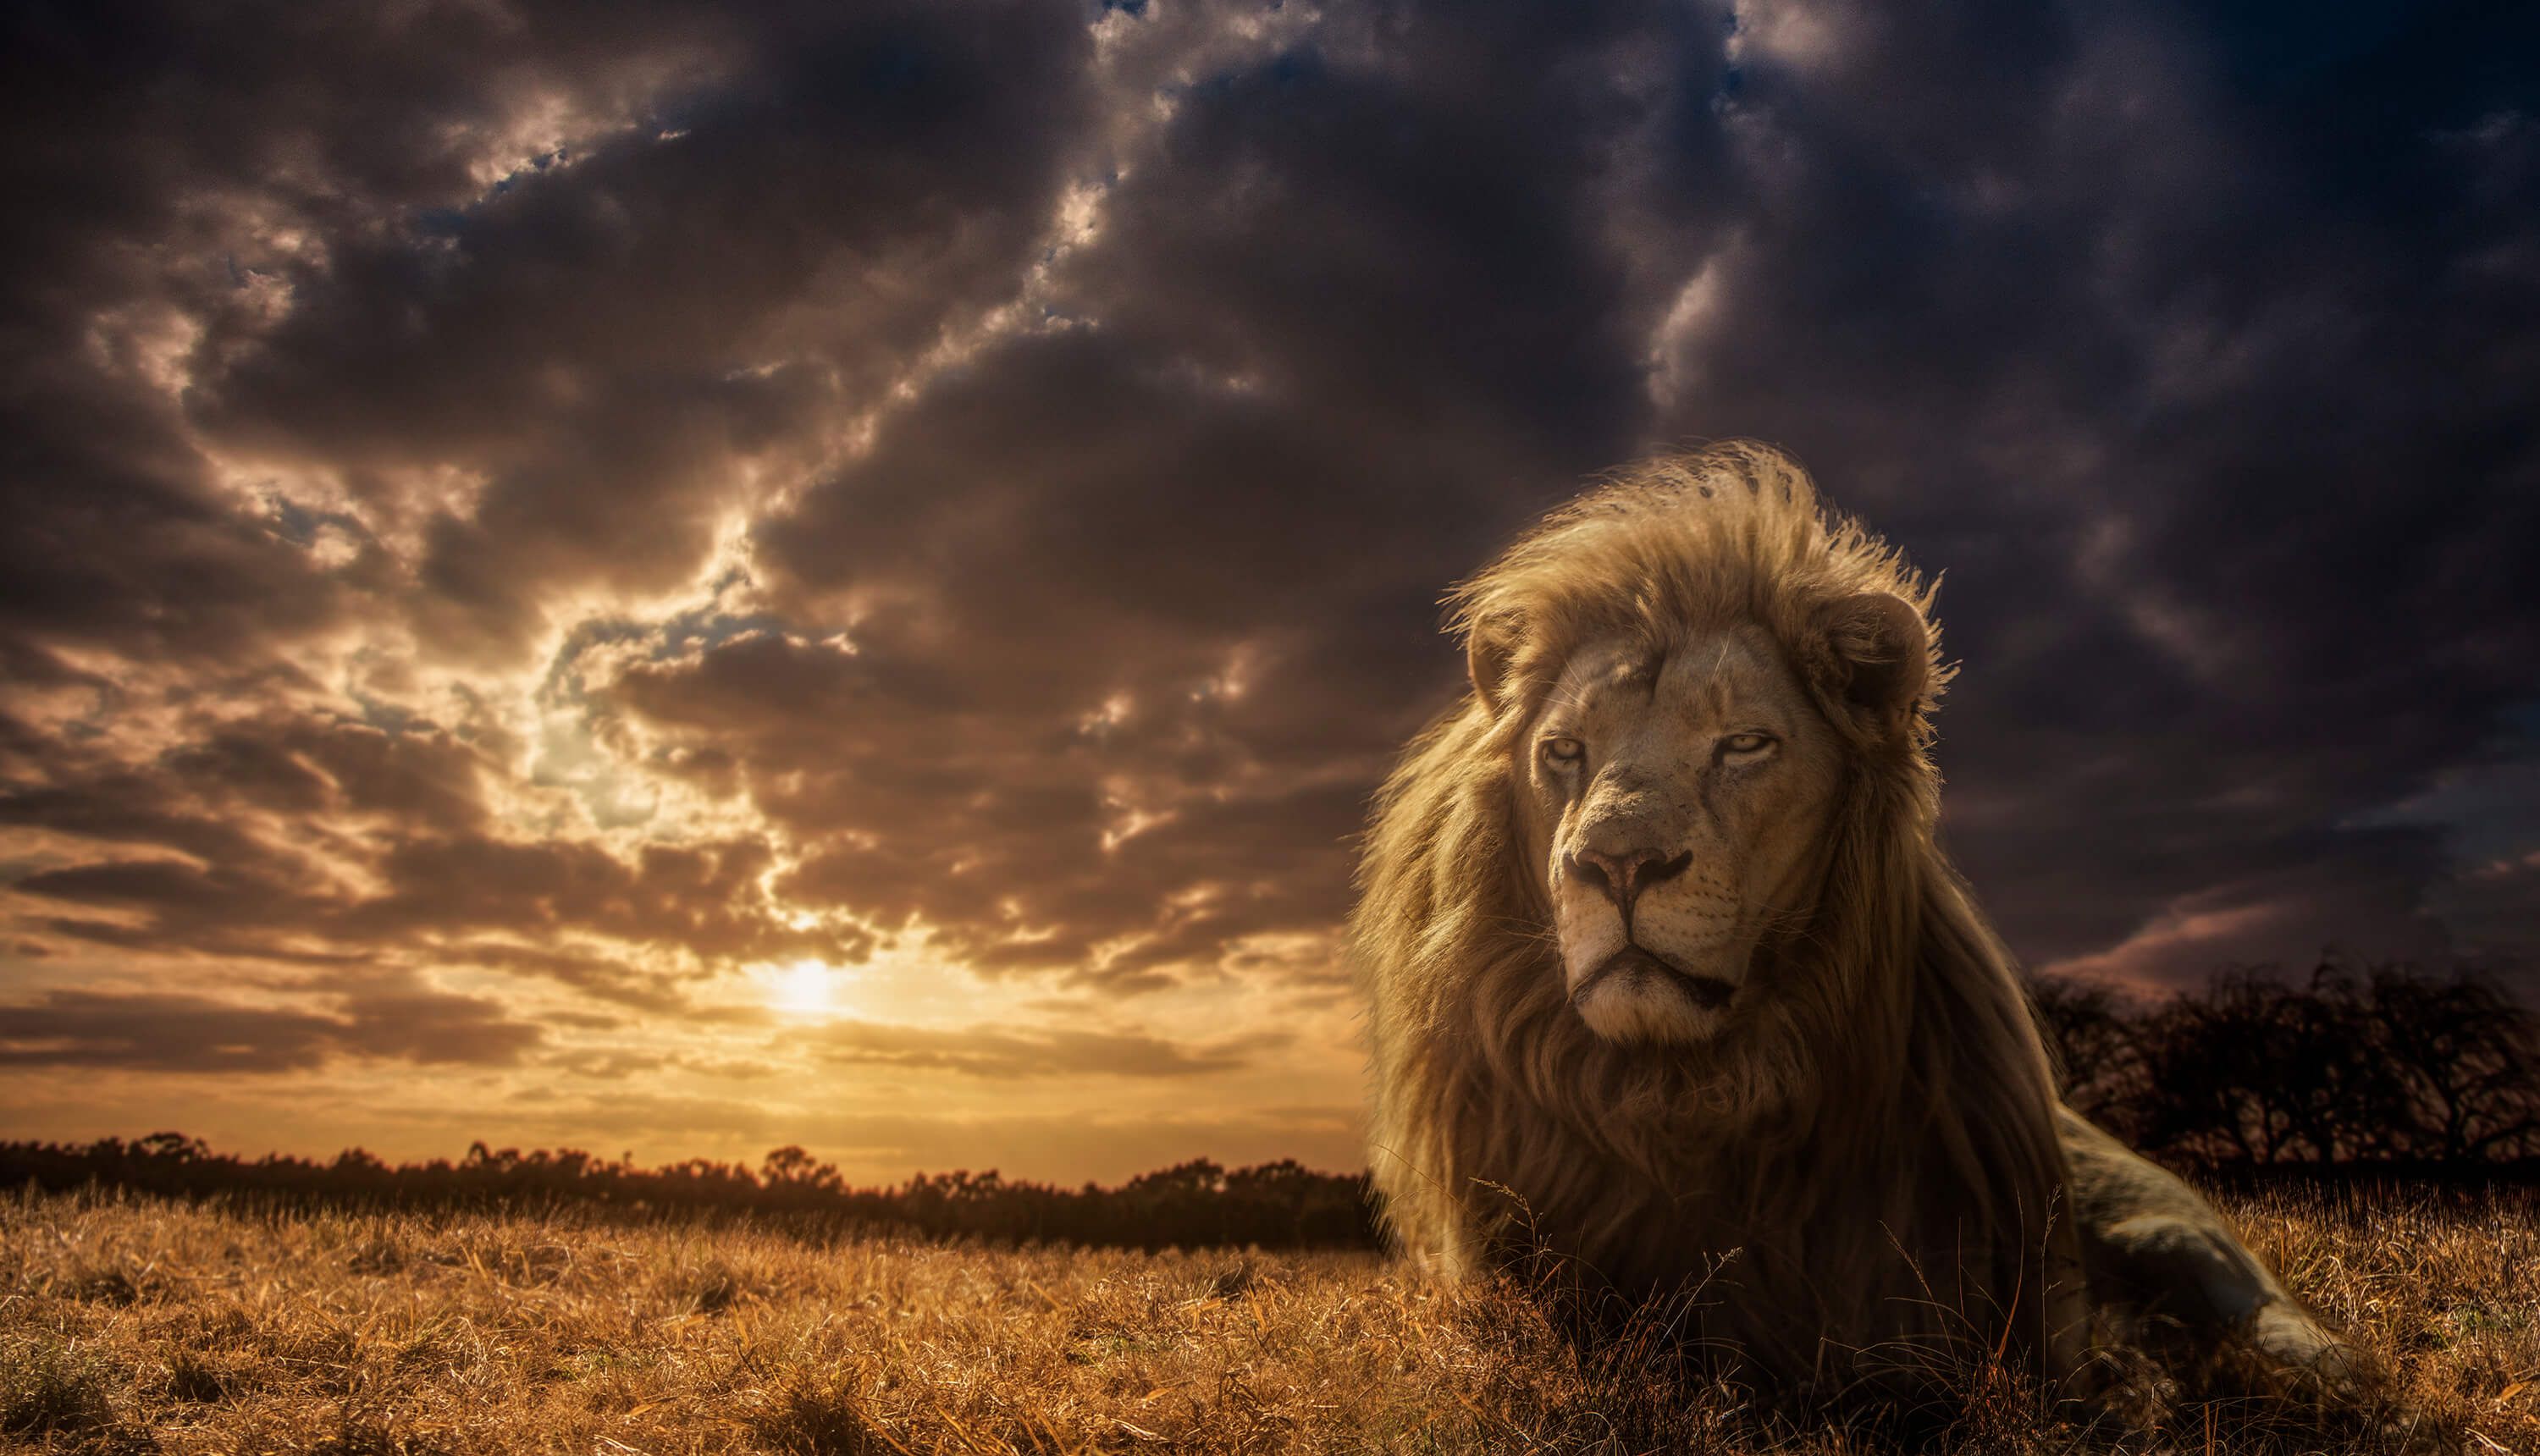 Animals Adventures on Savannah - The Lion King